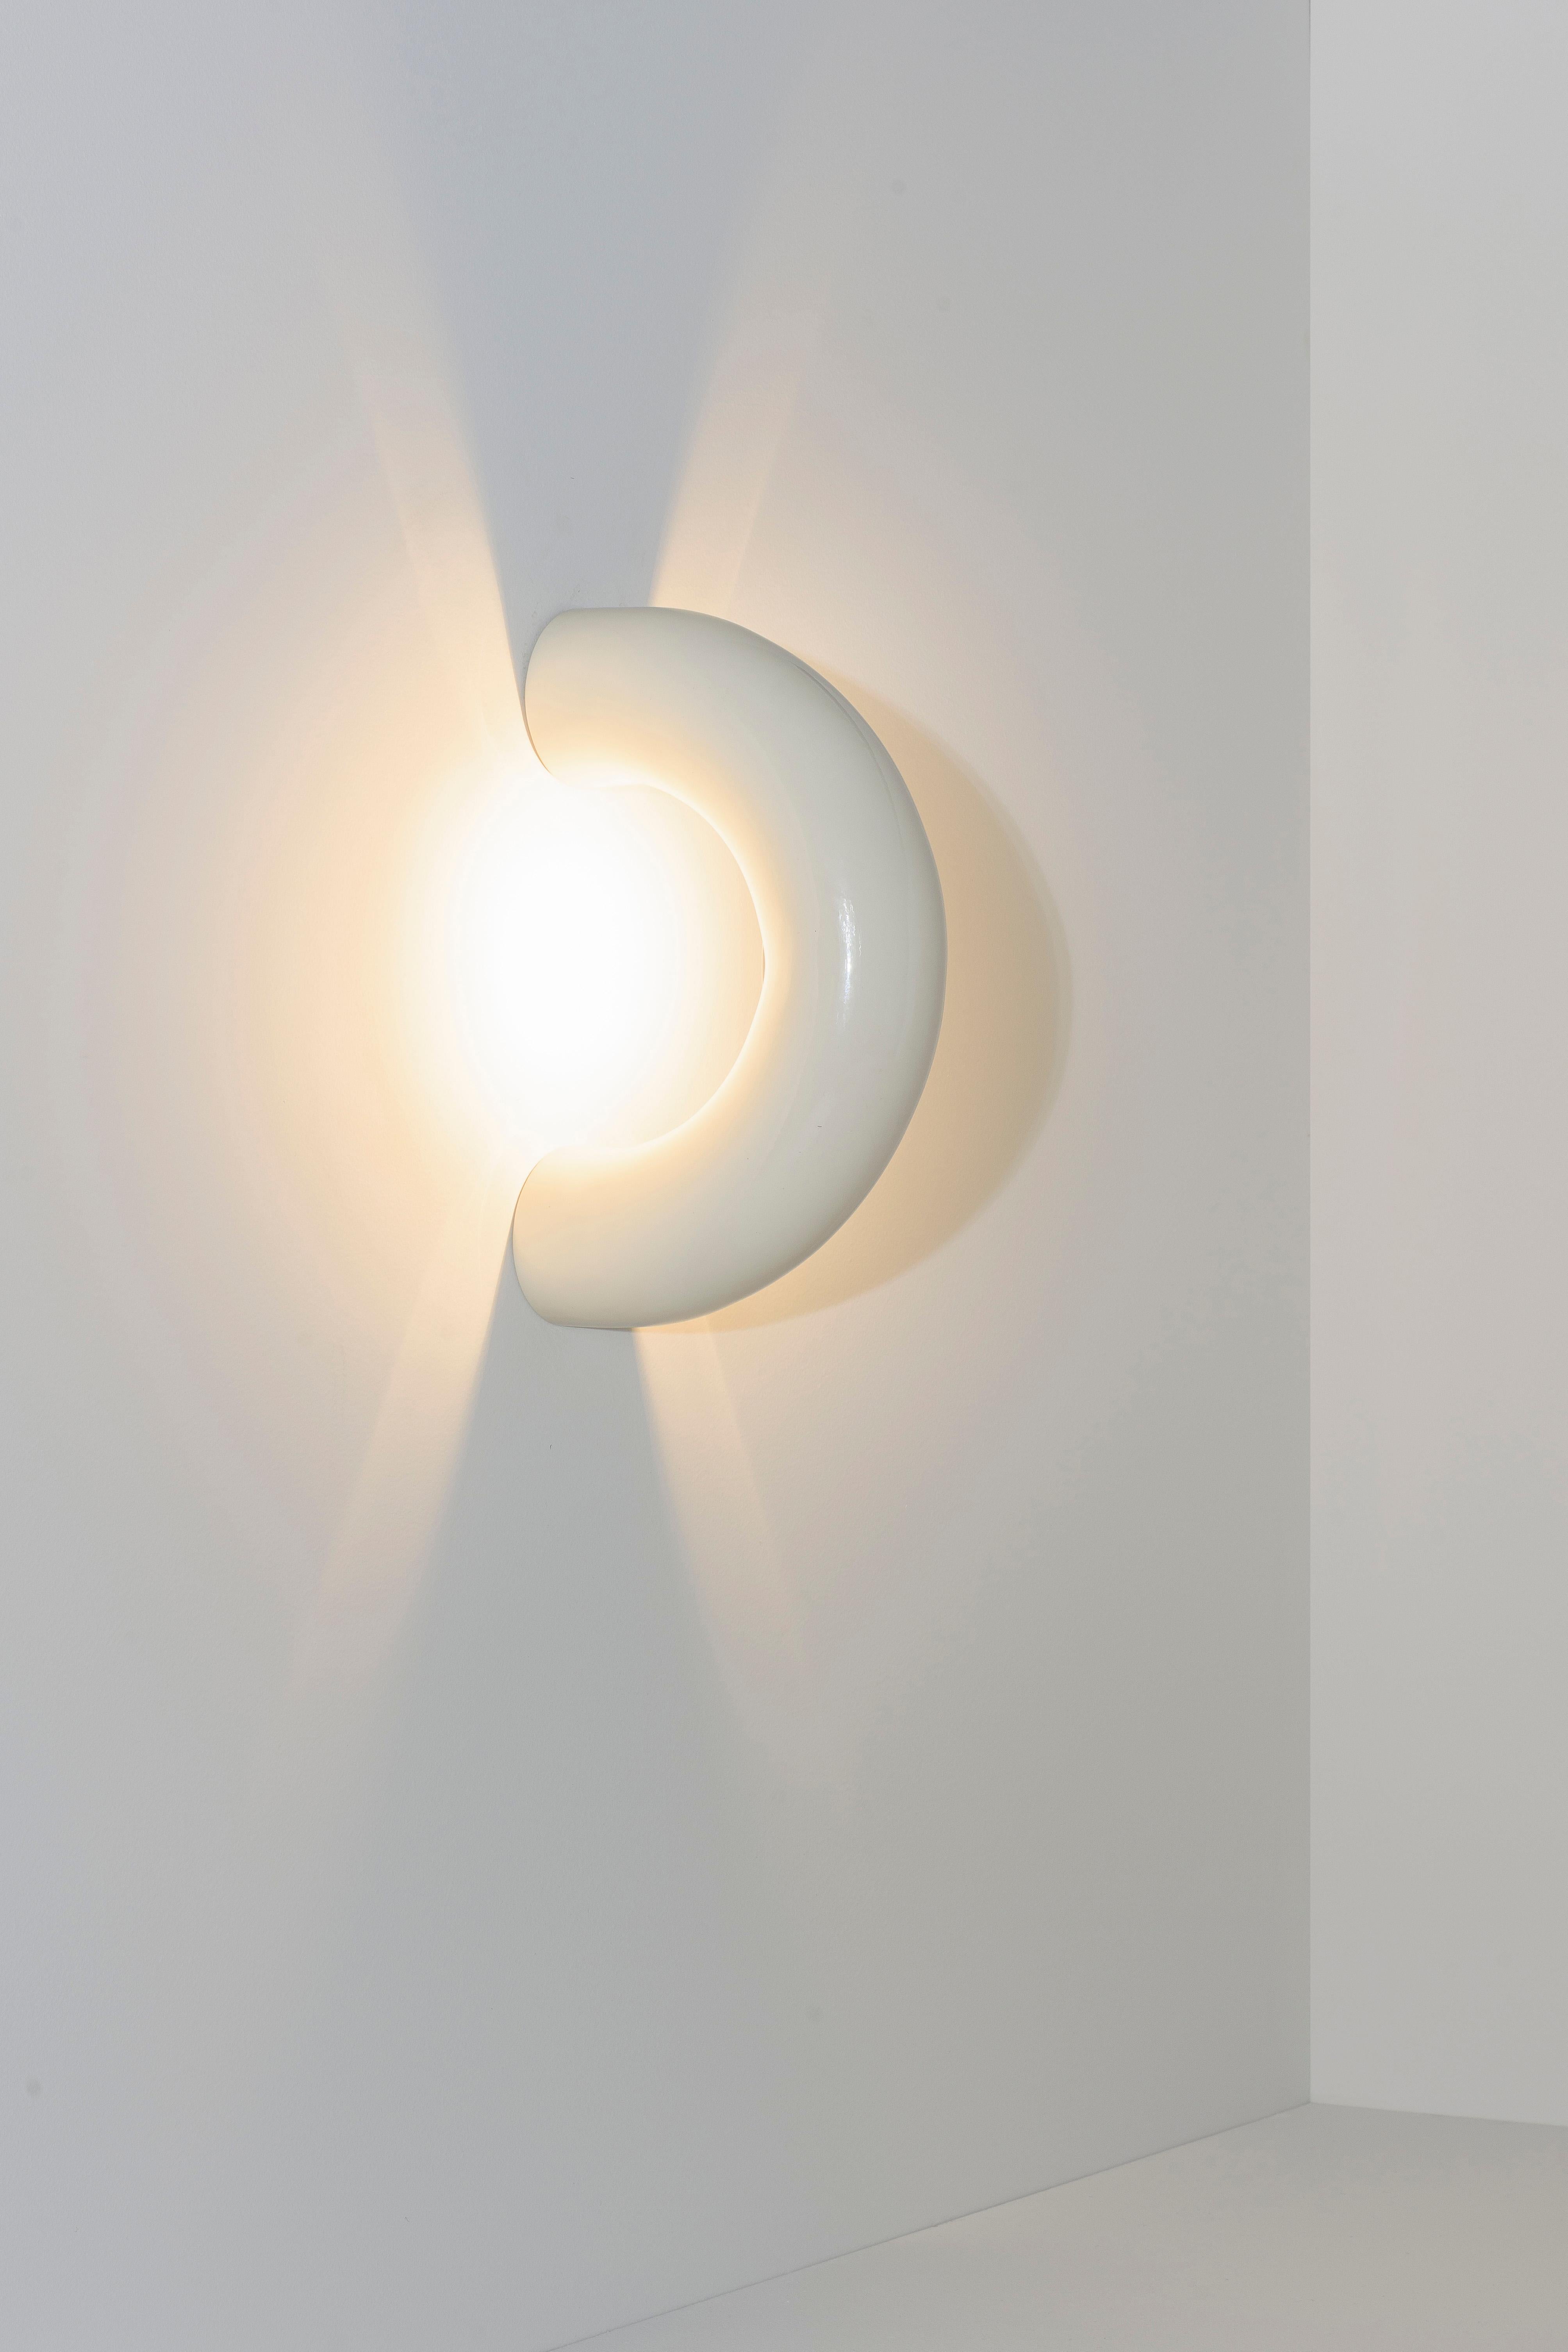 Les lampes Arco sont réalisées à partir d'une section de cercle prolongée qui se distingue par la discontinuité de sa forme. La collection se compose de lampes qui semblent pénétrer les surfaces qu'elles touchent, les éclairant délicatement. La mise